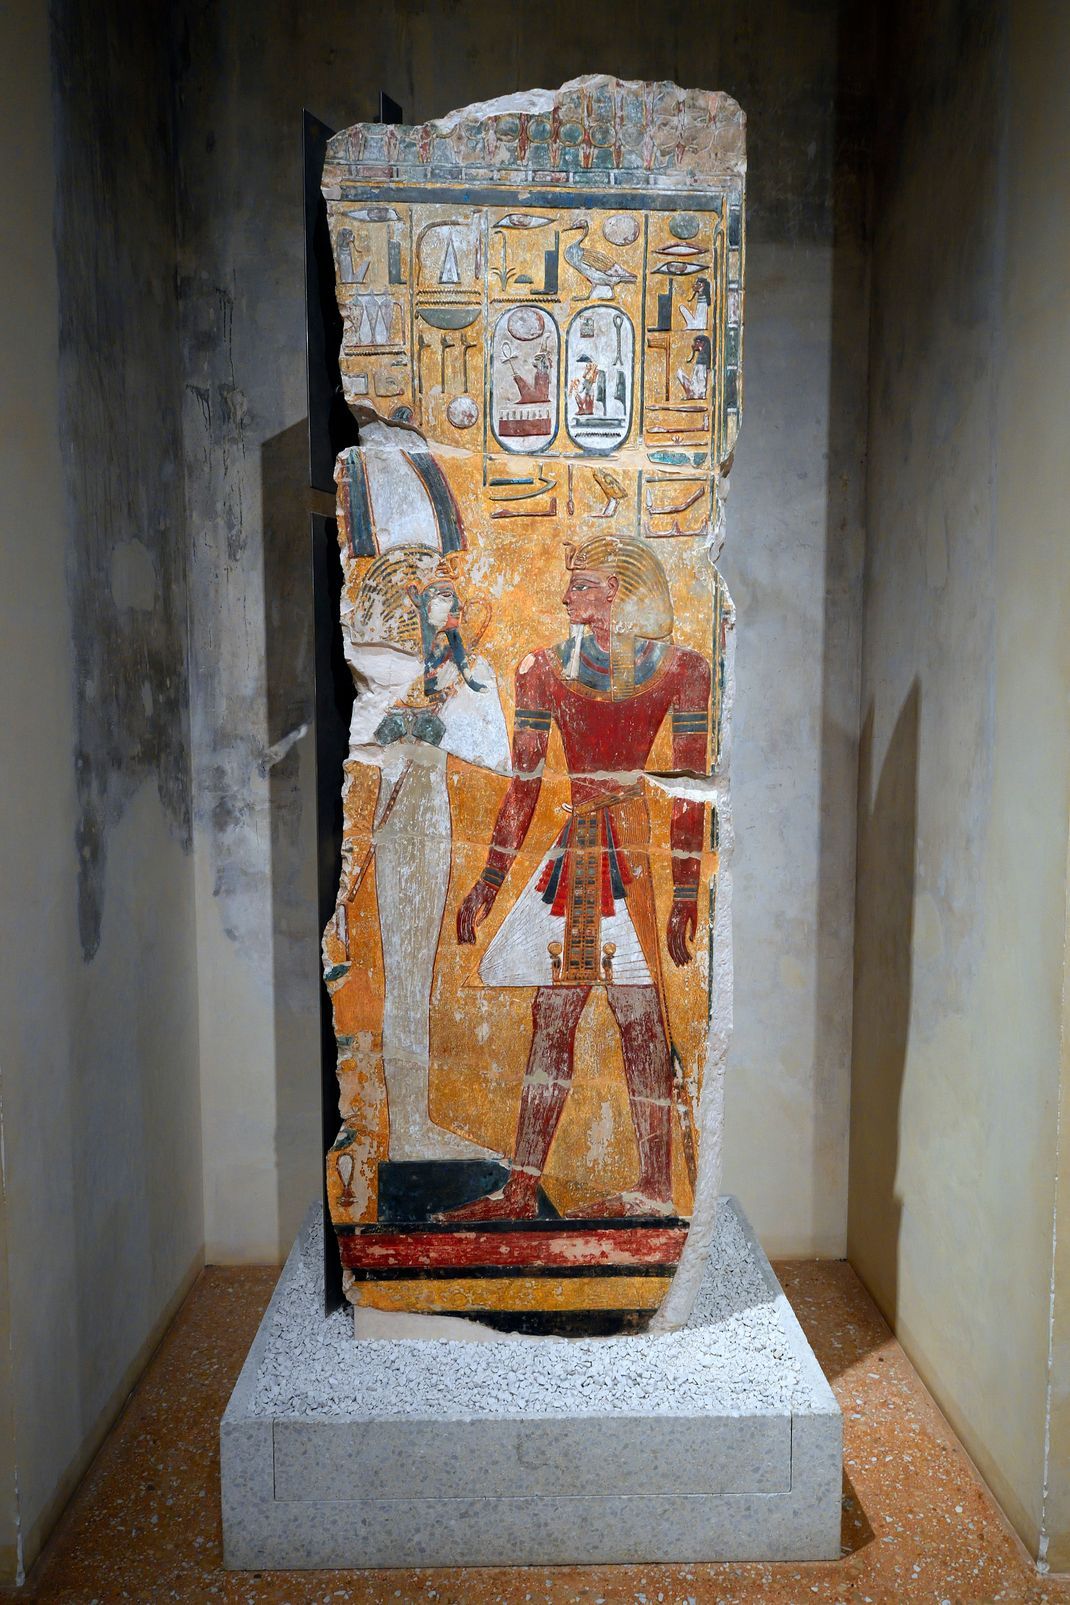 König Sethos I vor dem Gott Osiris, der hier mit Atef Krone dargestellt wird.